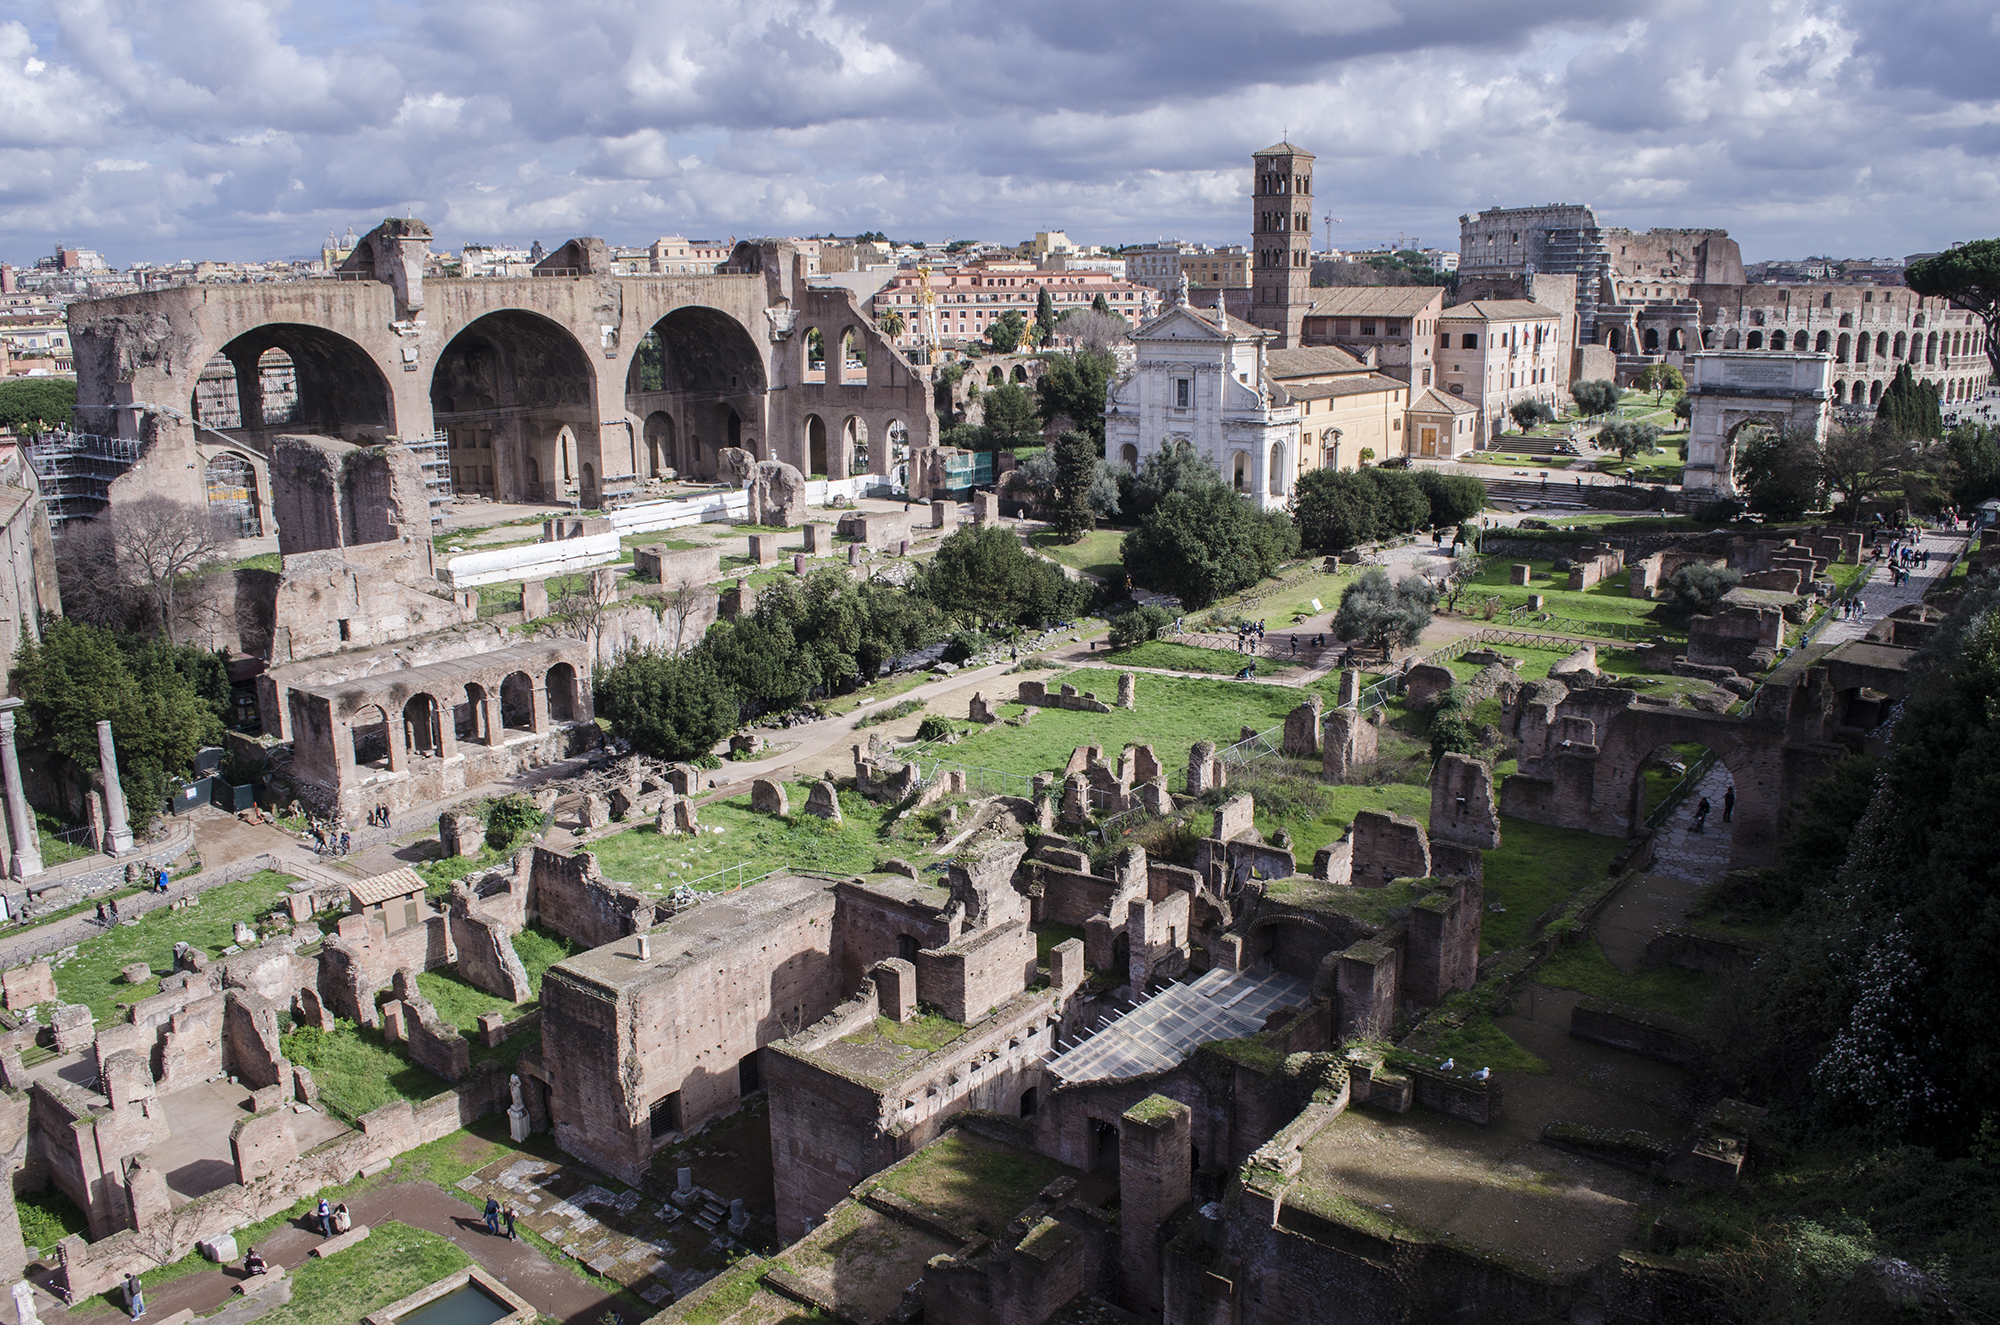  Blick auf das Forum Romanum